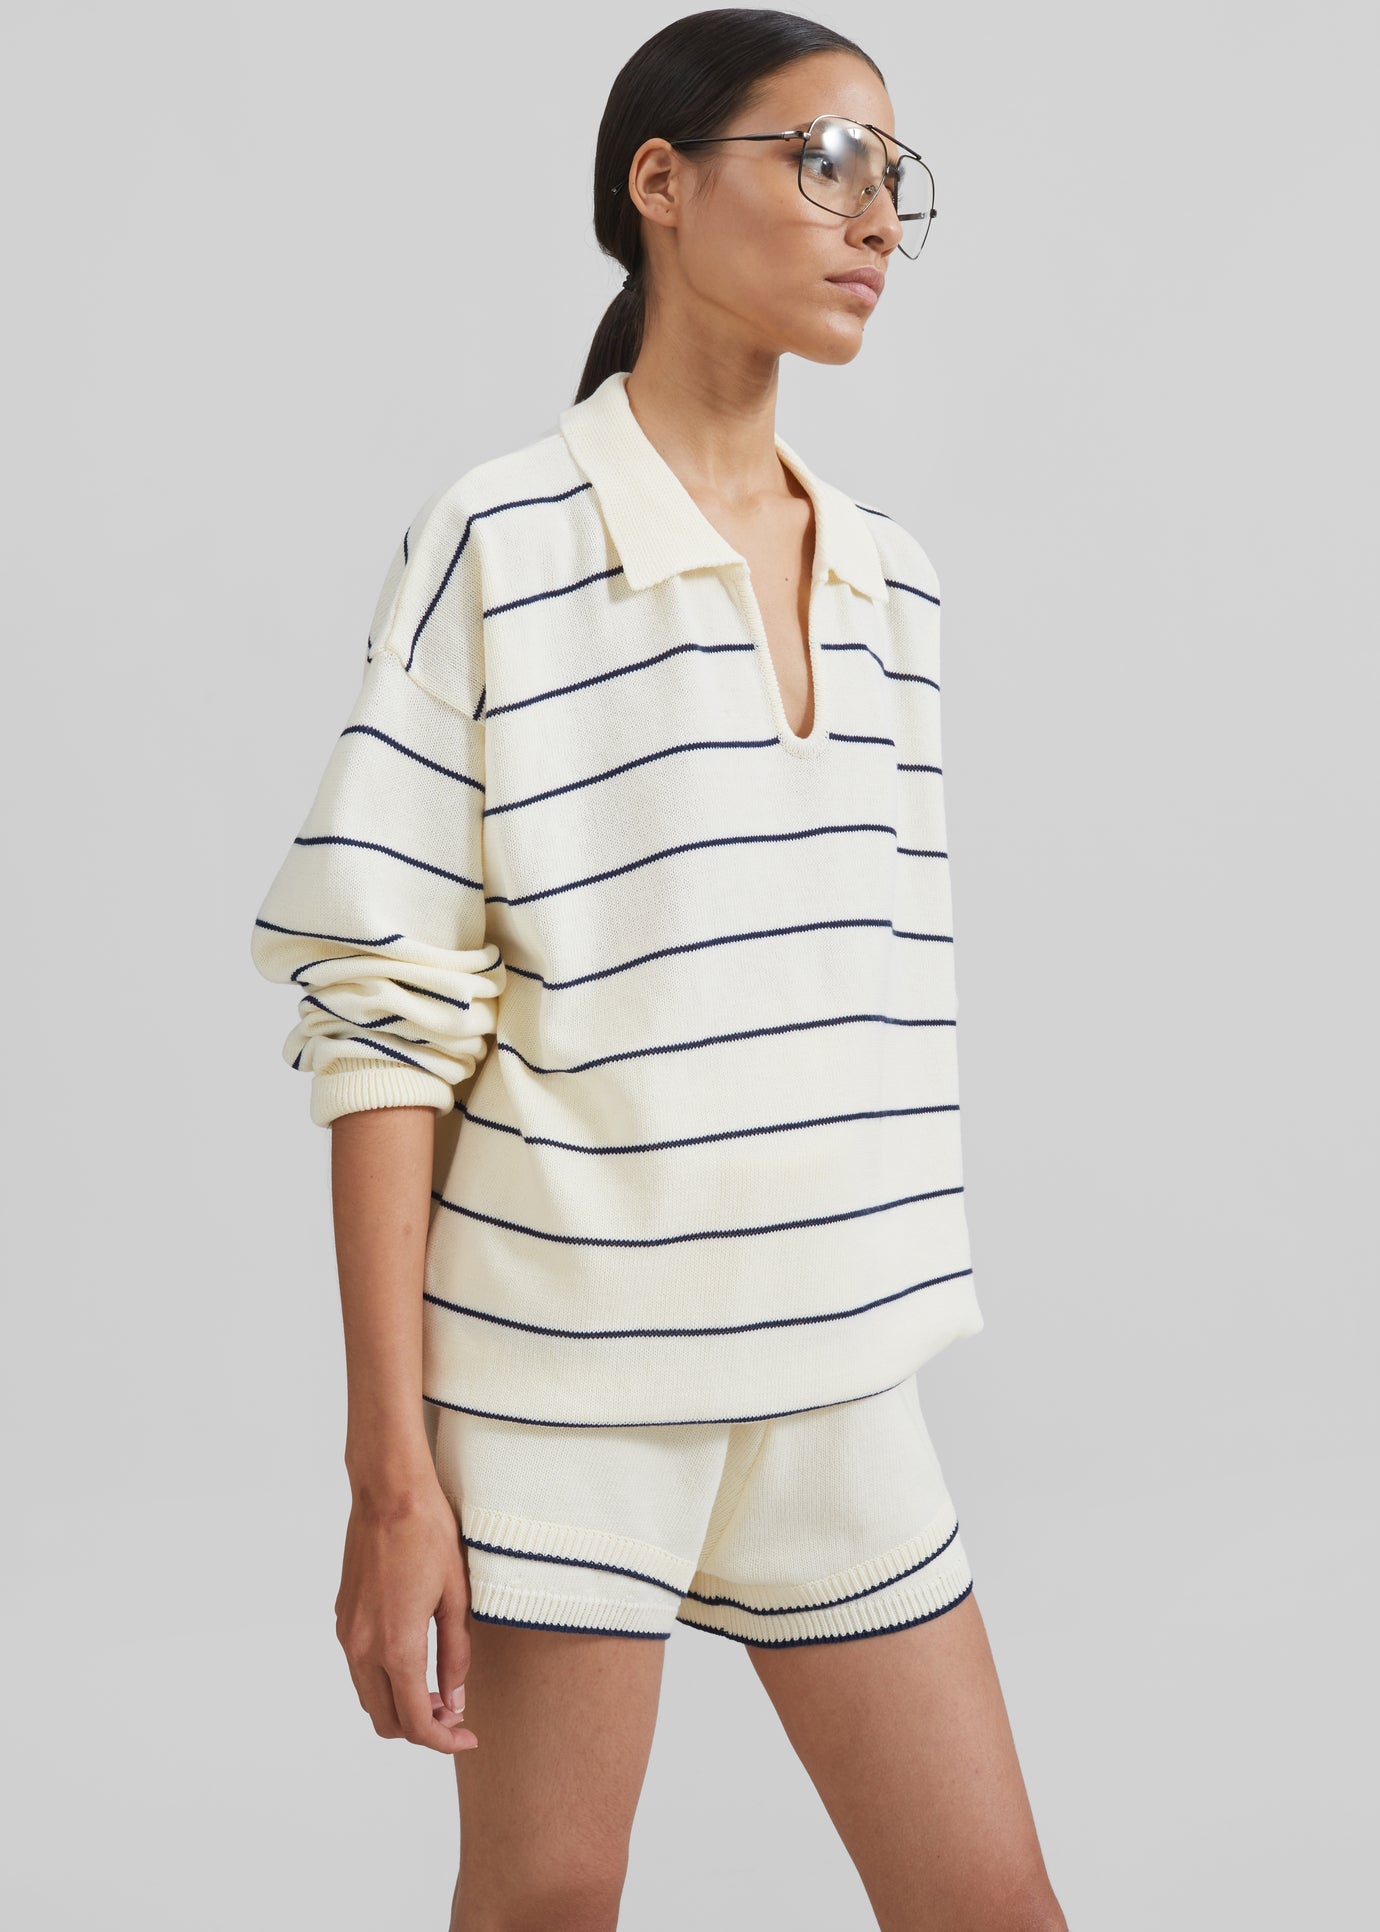 Claudia Knit Shorts - Cream/Navy Stripe - 1